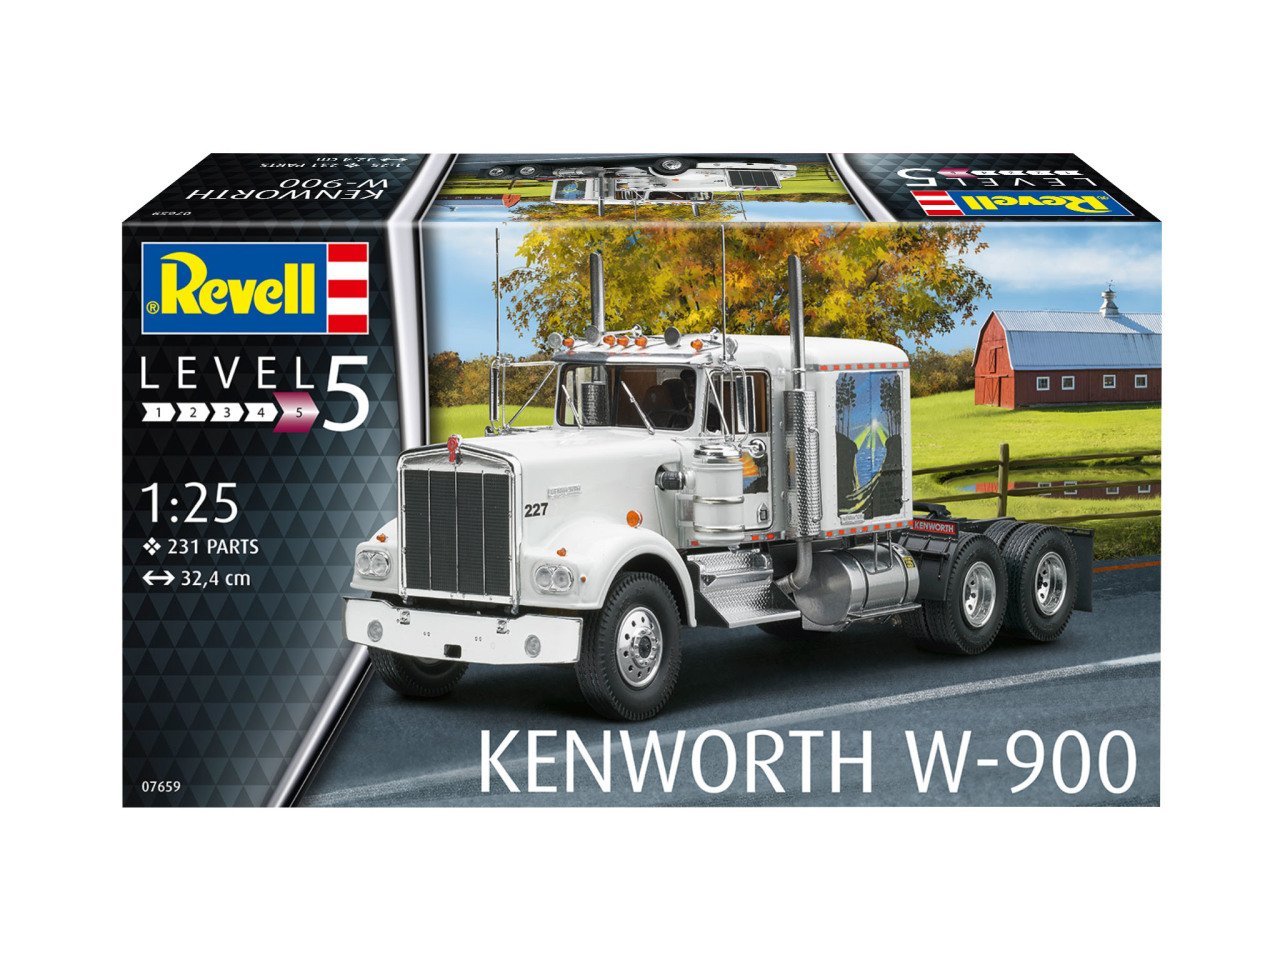 Kenworth W-900